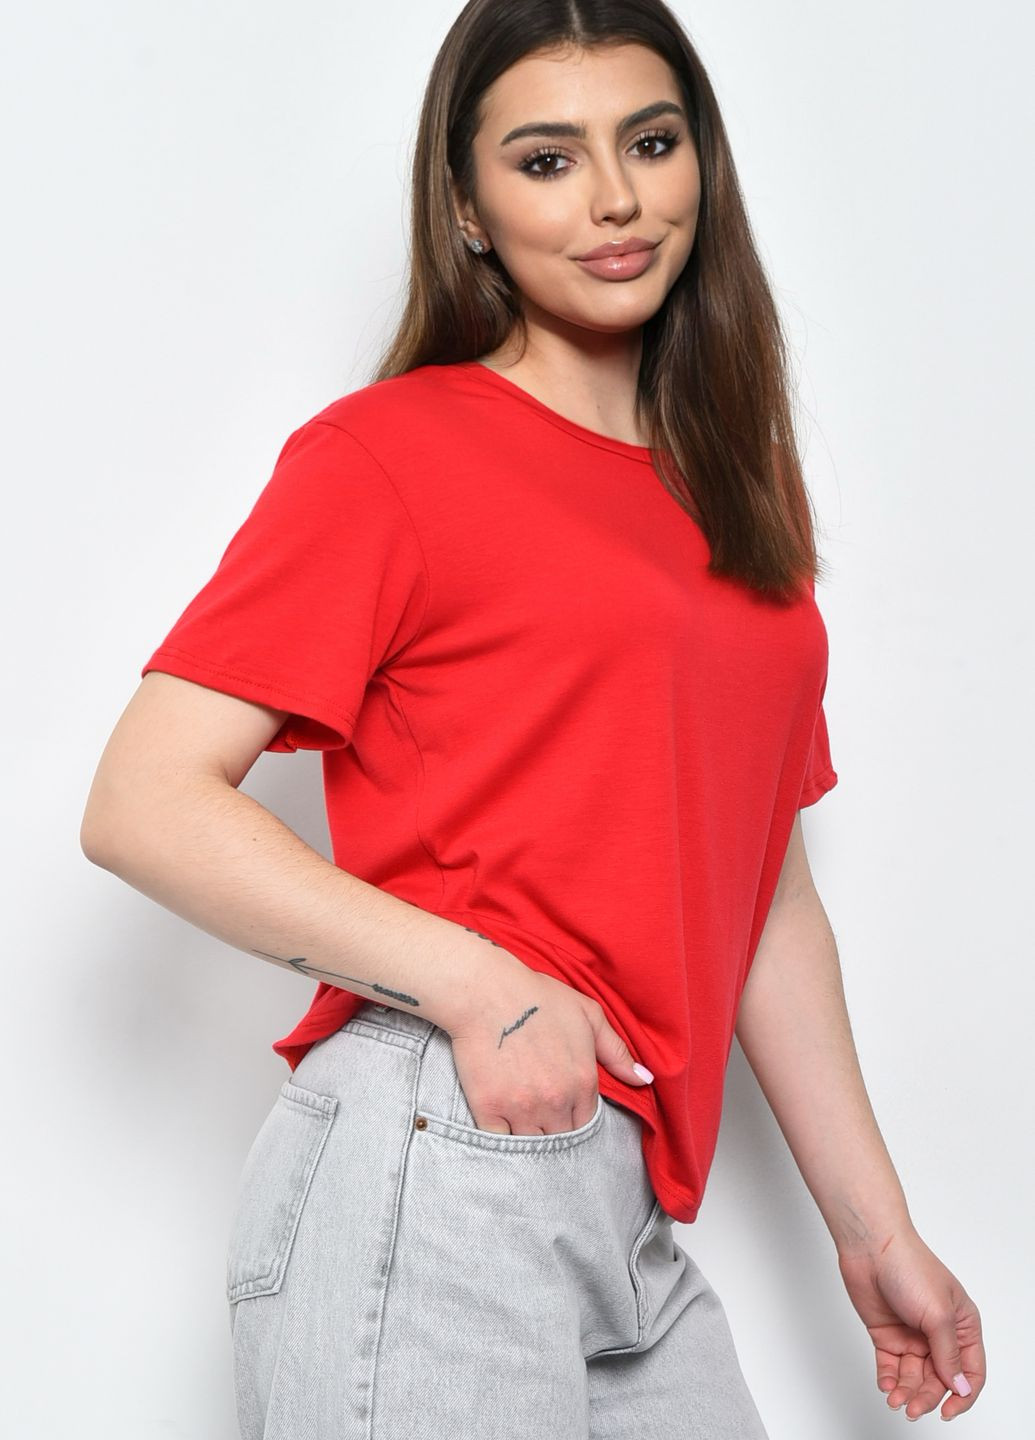 Красная летняя футболка женская красного цвета размер 48 Let's Shop